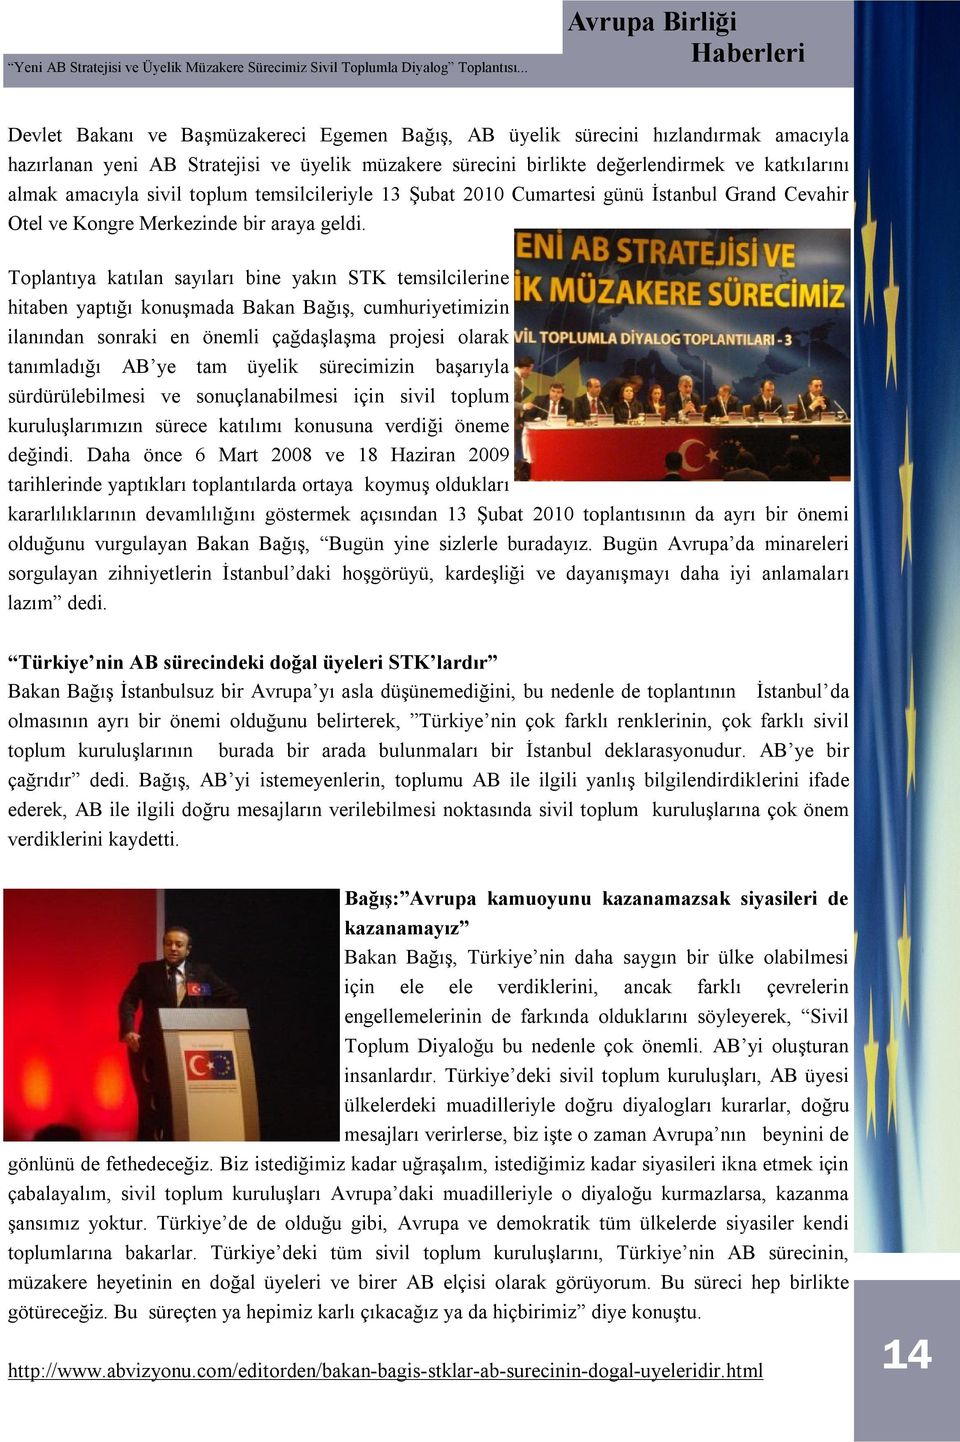 katkılarını almak amacıyla sivil toplum temsilcileriyle 13 Şubat 2010 Cumartesi günü İstanbul Grand Cevahir Otel ve Kongre Merkezinde bir araya geldi.